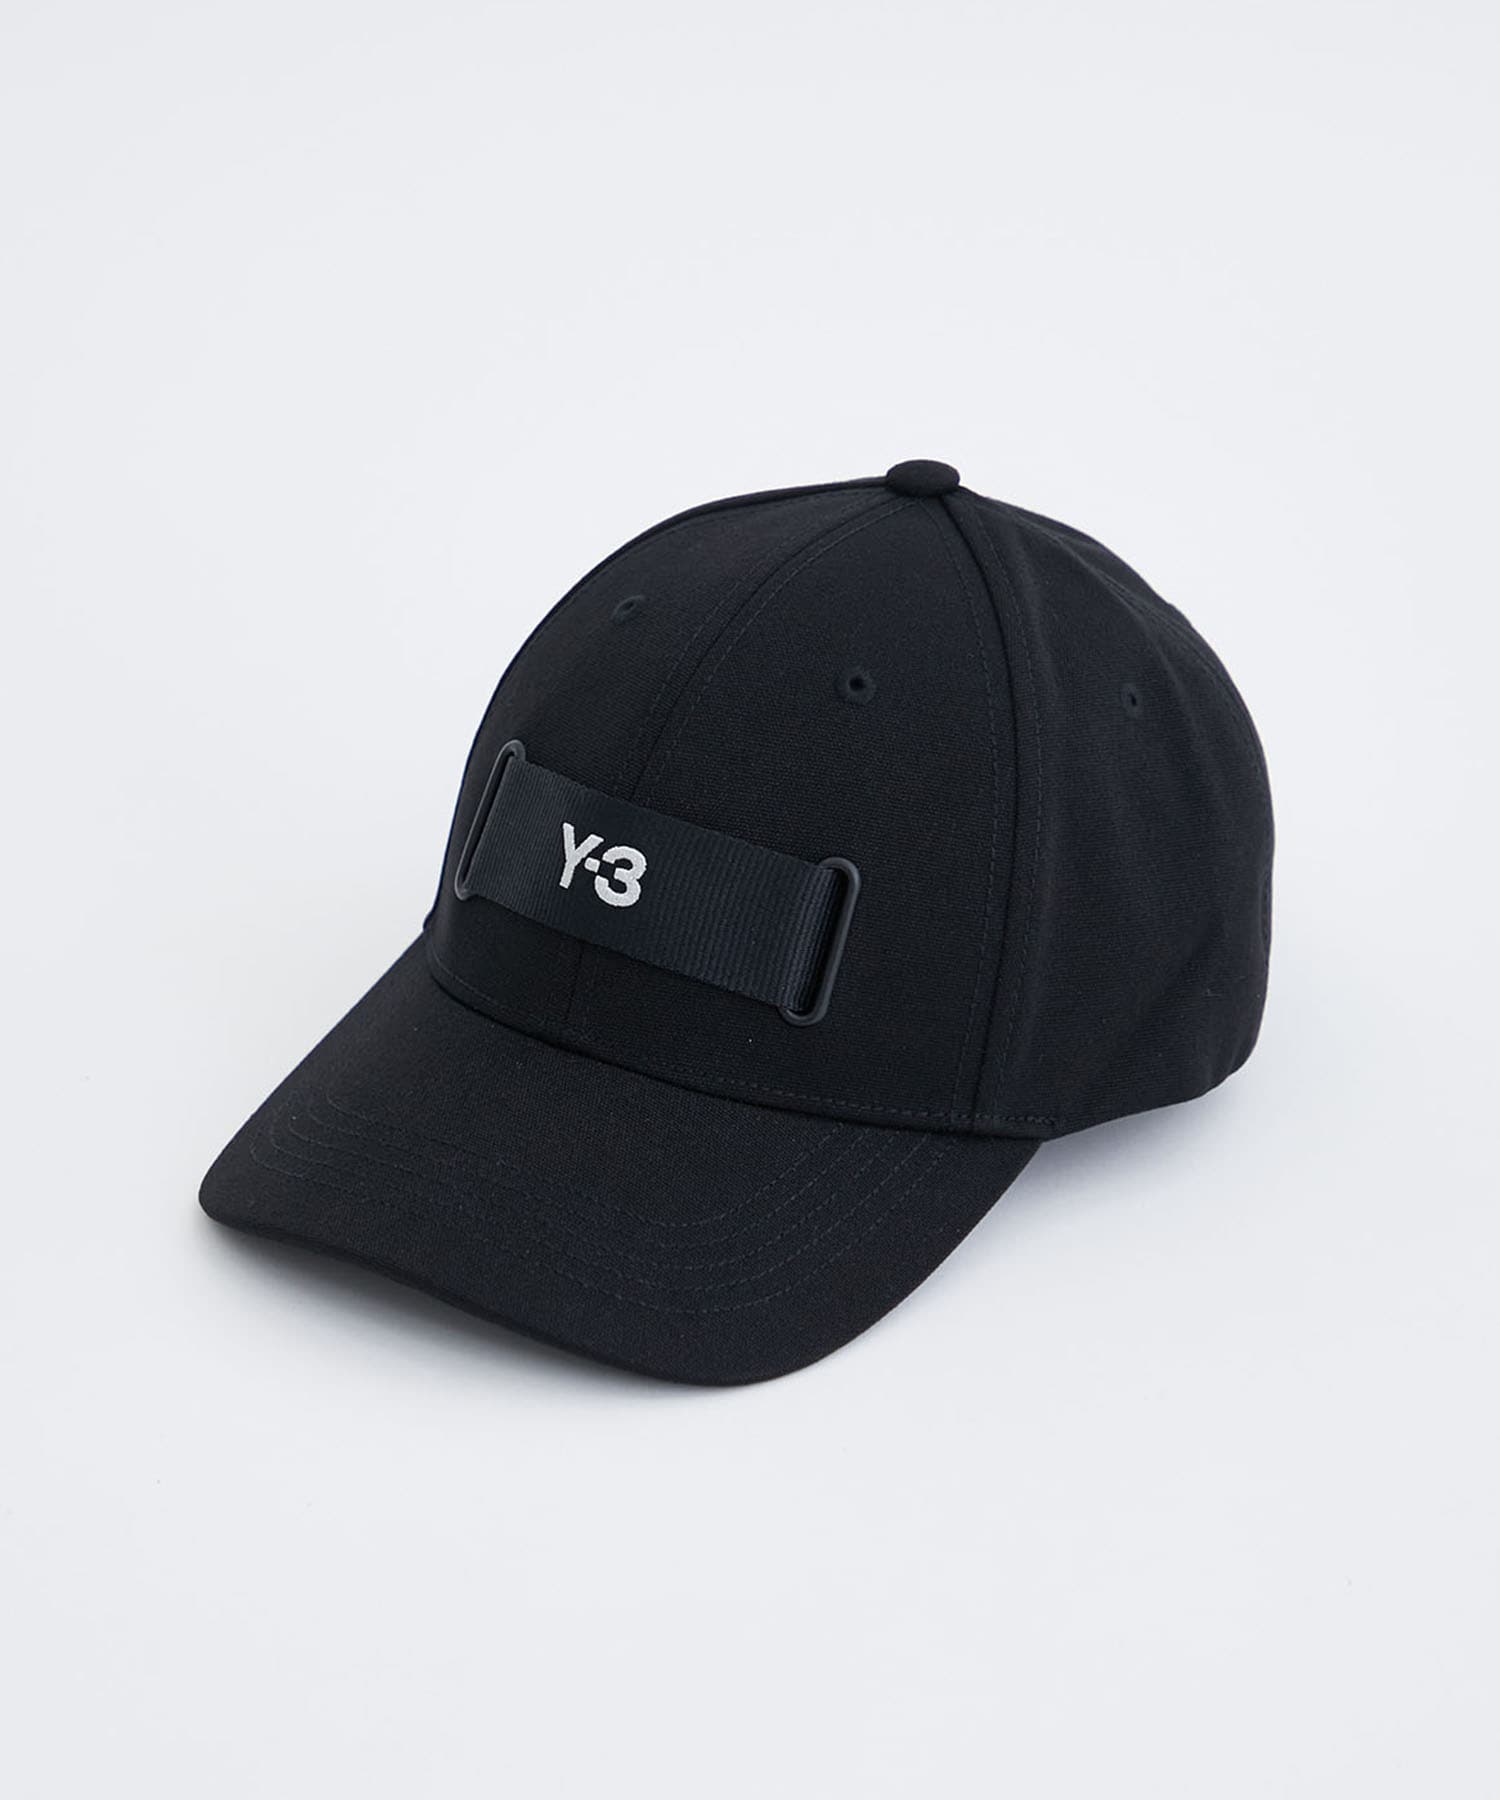 Y-3 WEBBING CAP